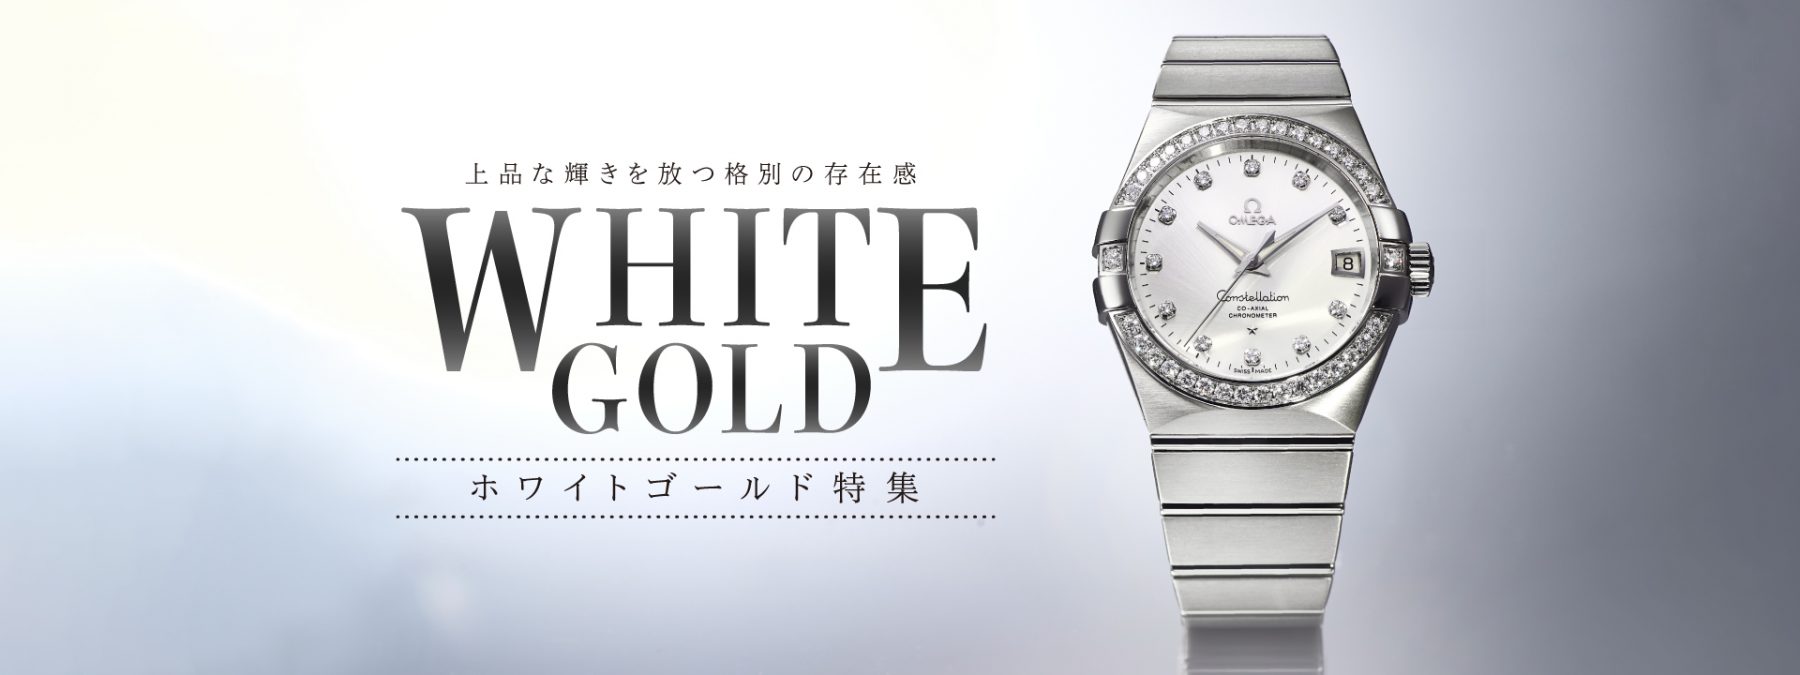 ホワイトゴールドの腕時計特集です。